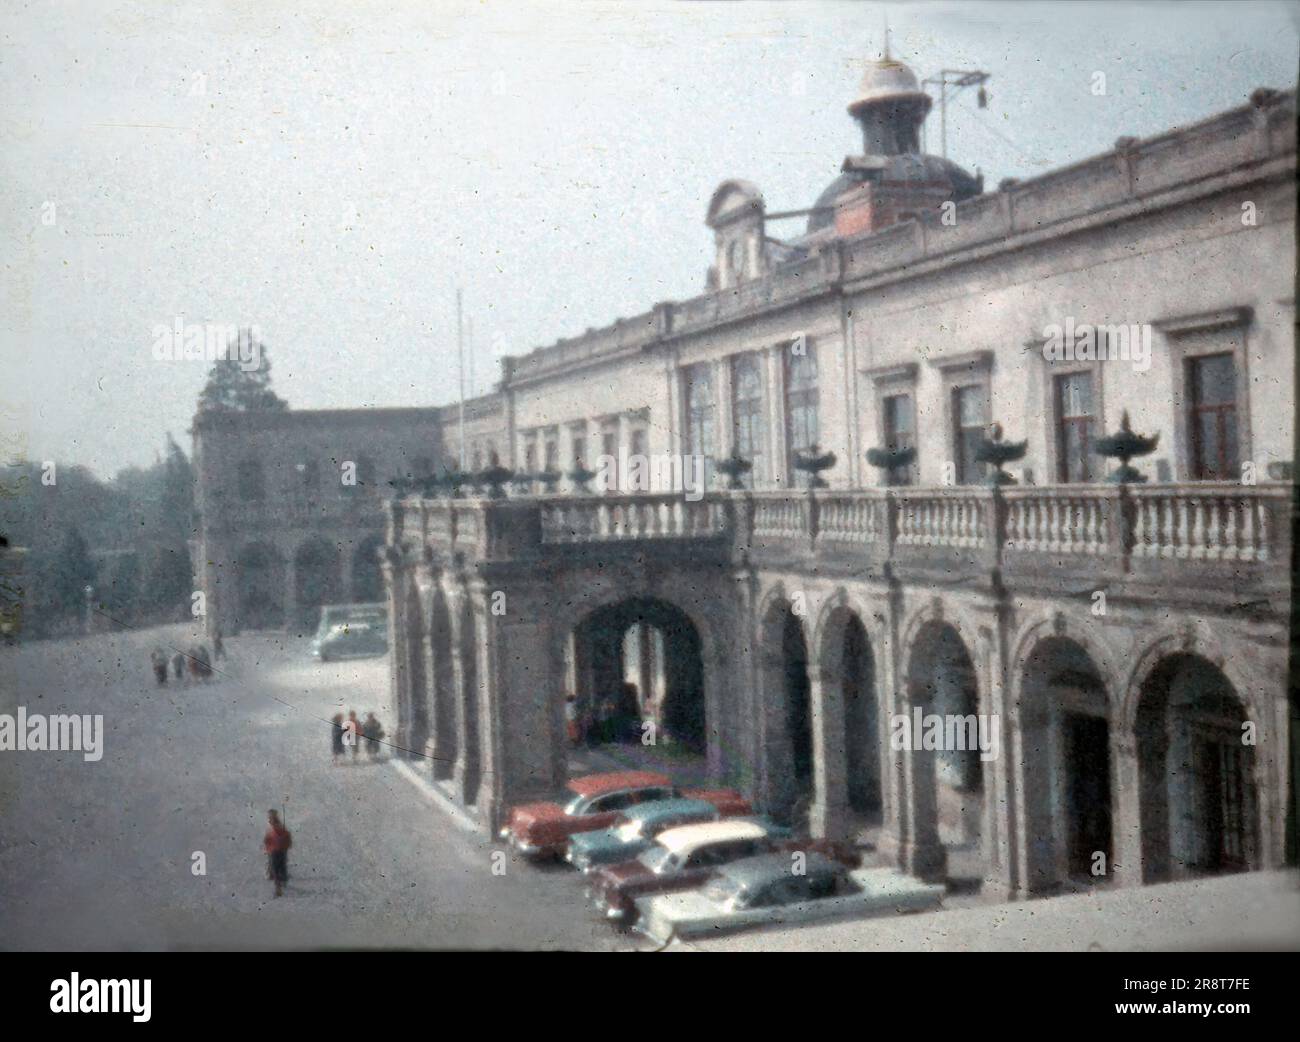 Der Chapultepec Palace in Mexico City, Mexiko, aus dem späten 1950er. Jahrhundert, beherbergt das National Museum of History - eine 8-mm-Diashow im Vintage-Stil. Stockfoto